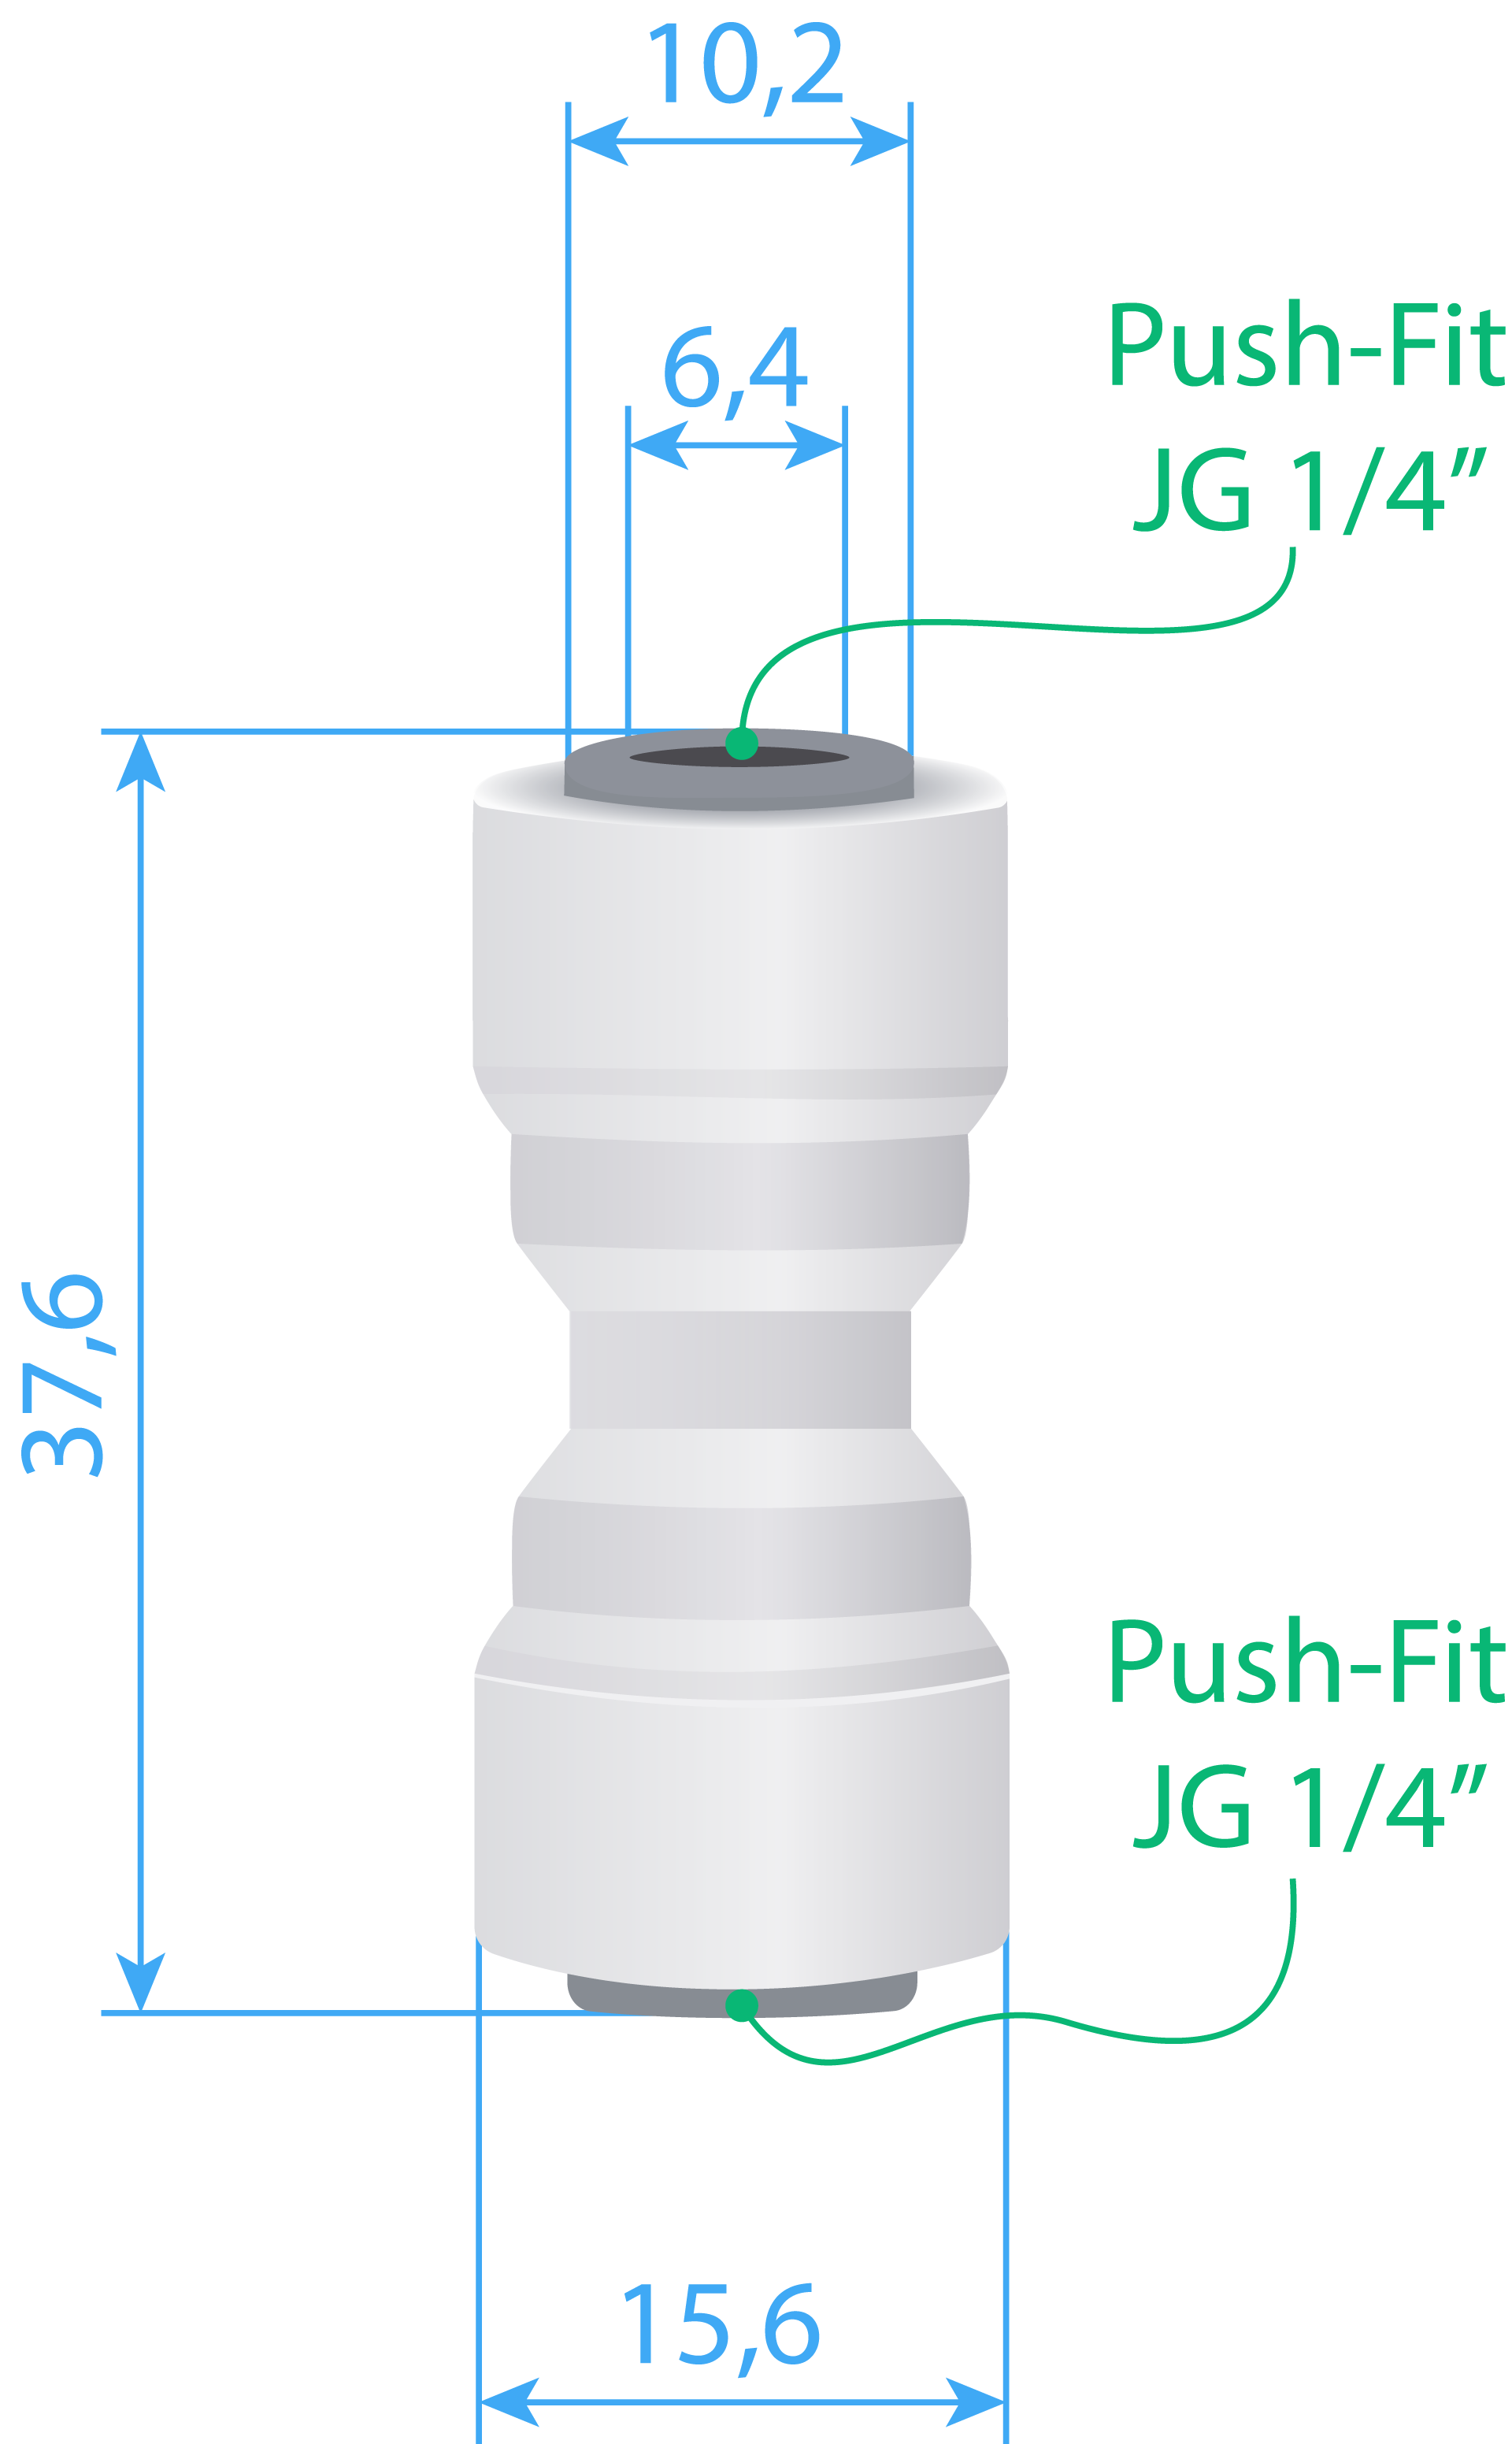 Connector Type-I (PF JG 1/4” – PF JG 1/4”) Dimensions